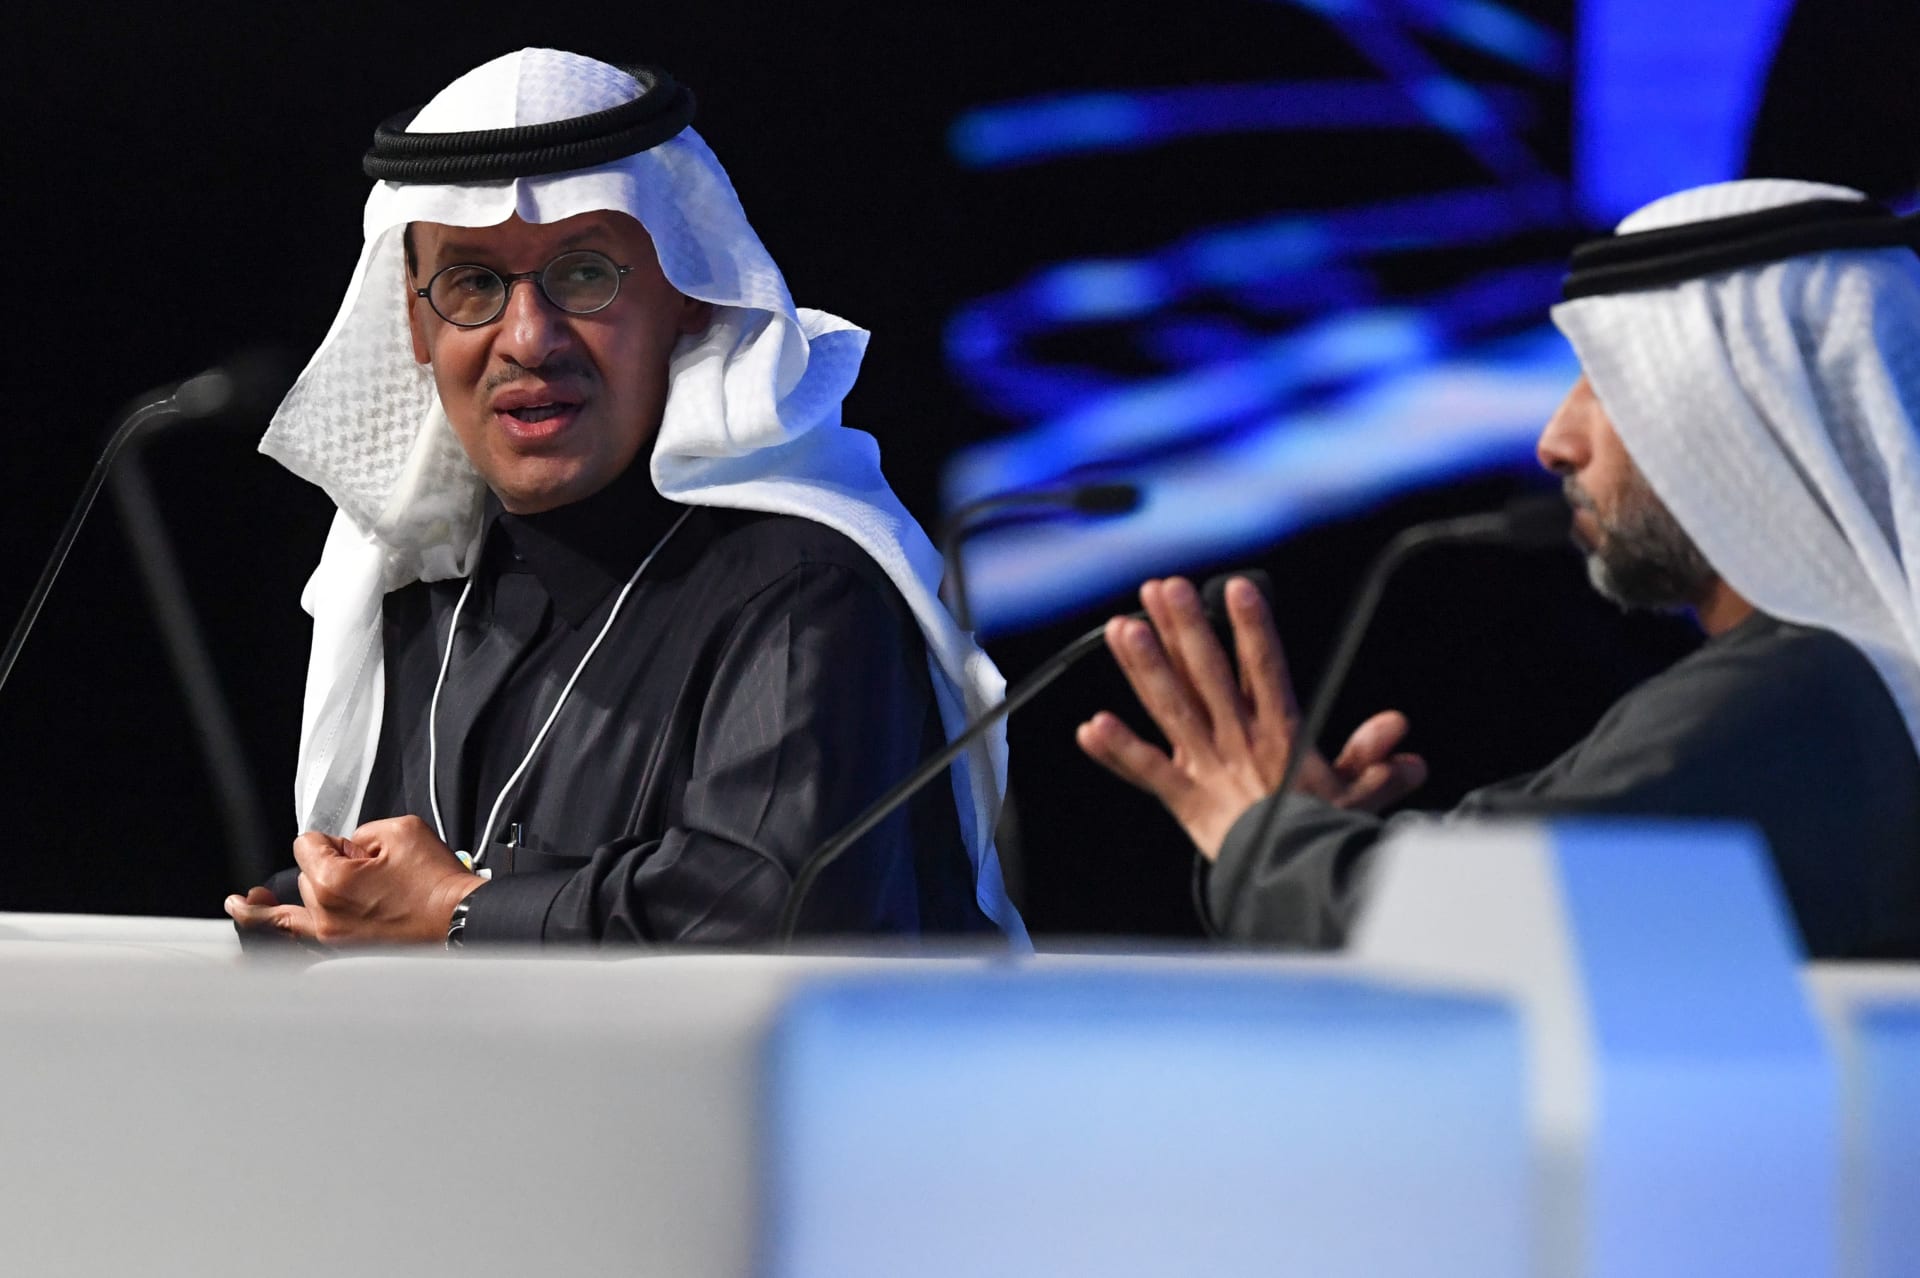  وزير الطاقة السعودي الأمير عبد العزيز بن سلمان آل سعود (إلى اليسار) ووزير الطاقة والصناعة الإماراتي سهيل المزروعي يحضران قمة مستقبل الاستدامة في مركز أبوظبي الوطني للمعارض في 14 يناير 2020